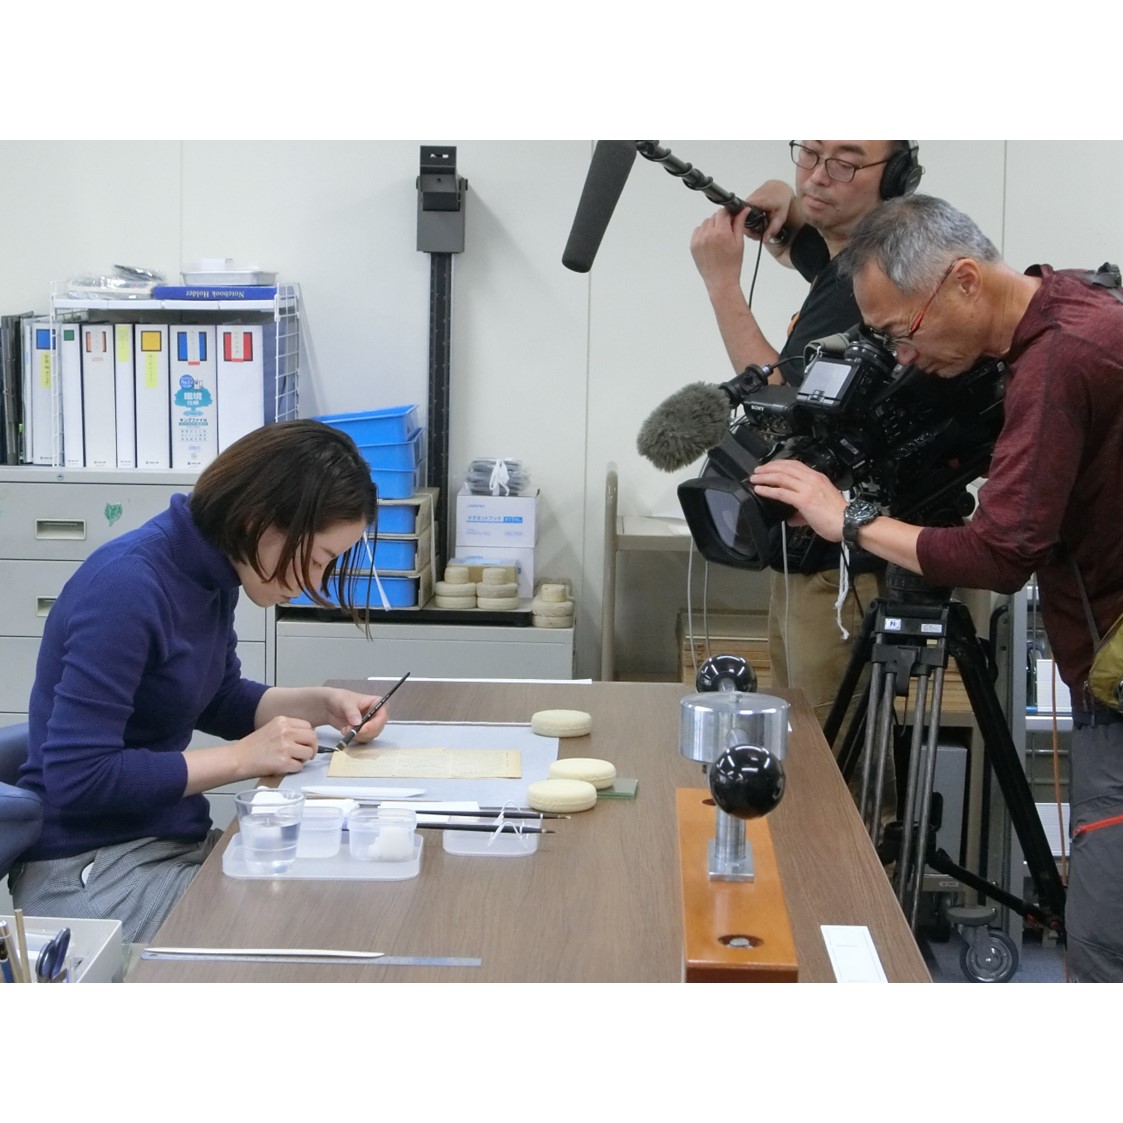 国立公文書館では、紙の資料の修復に和紙を用いています。その様子が、NHK BSの番組「美の壺」（エピソード：和紙、初回放送日5月15日予定）で取り上げられます。是非ご覧ください。nhk.jp/p/tsubo/ts/3LW… ＃和紙　＃美の壺　＃国立公文書館